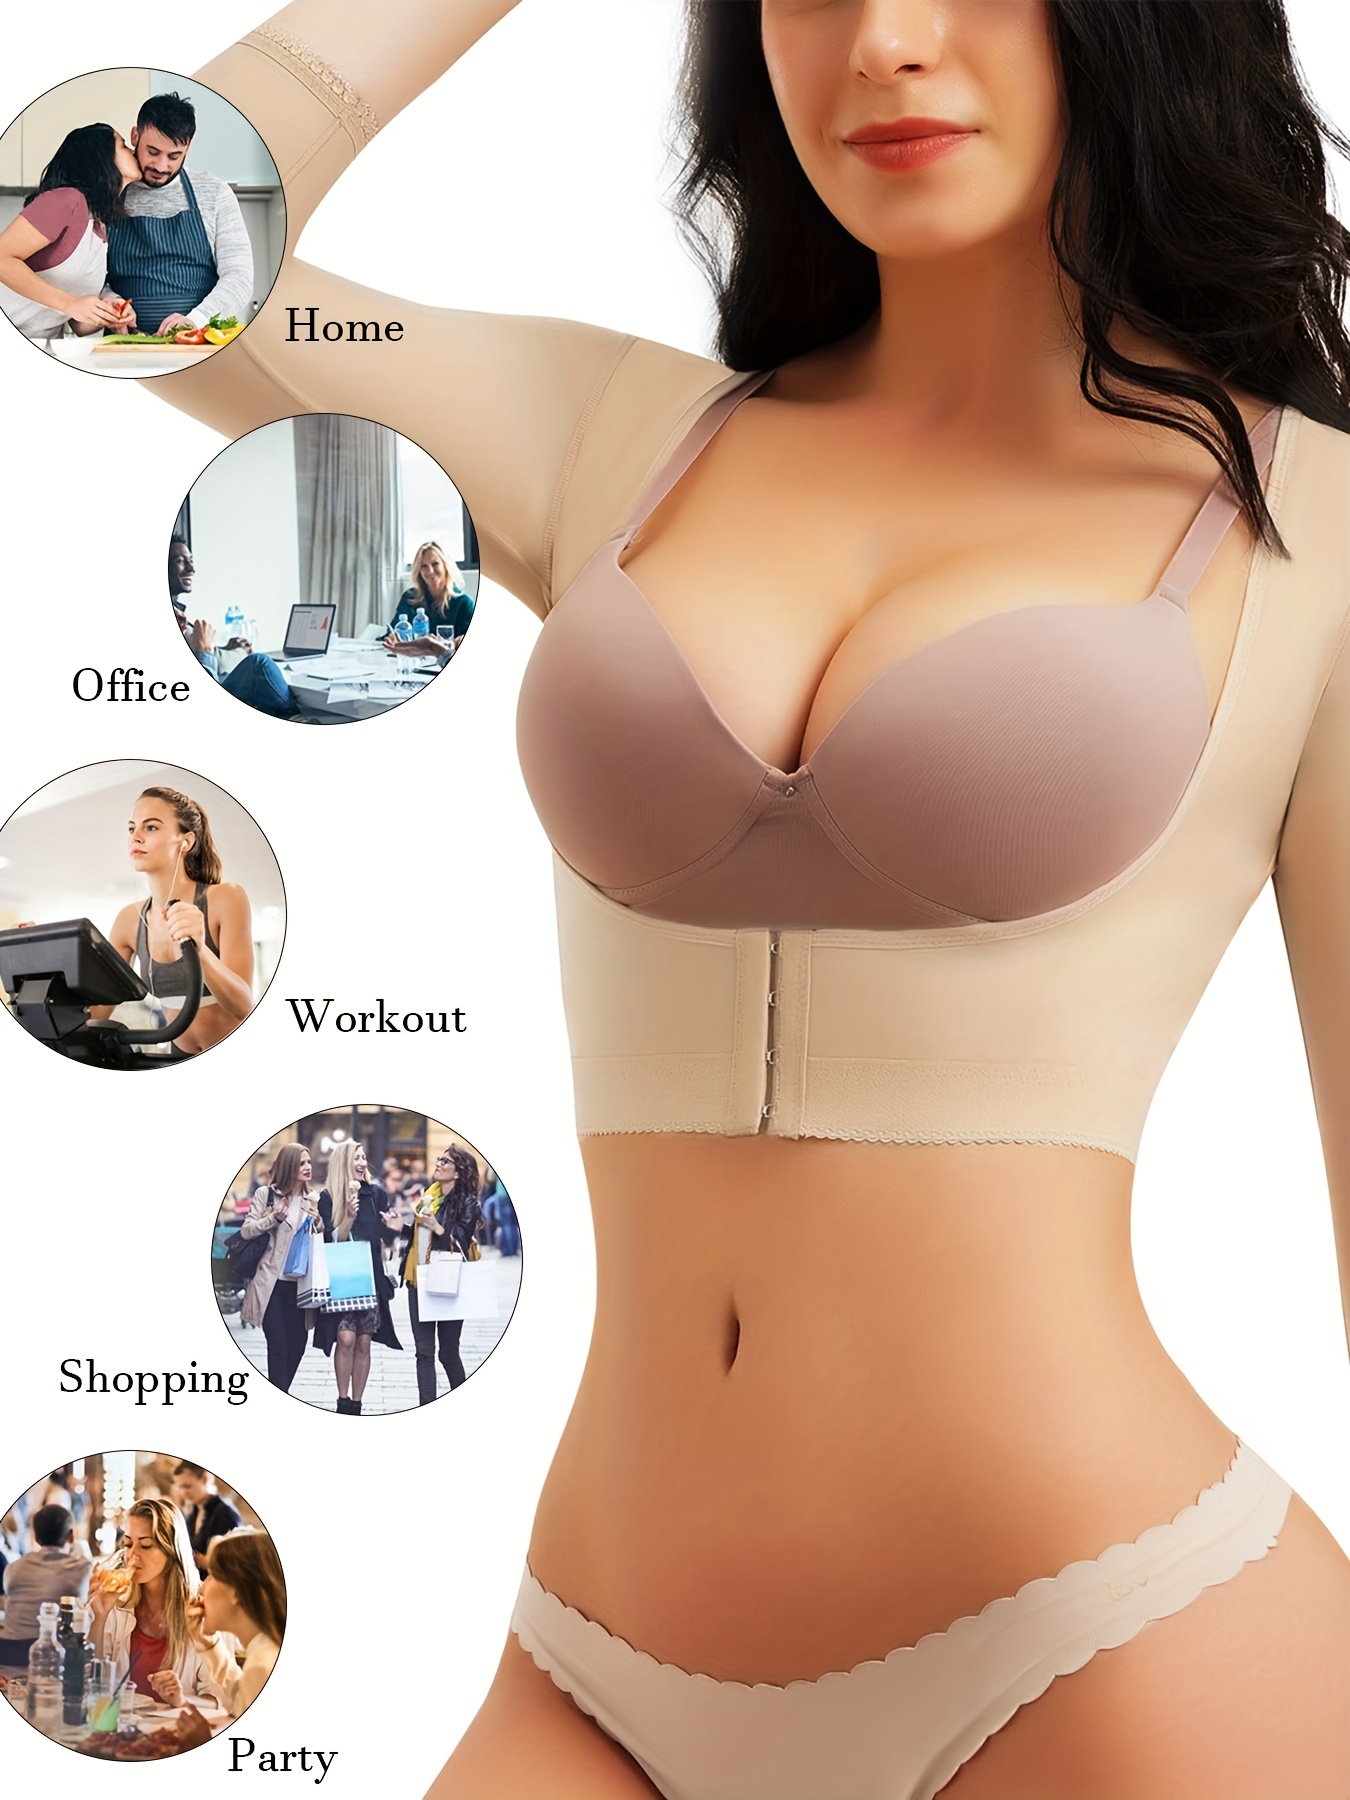 Women Upper Body, Breast & Arm Shaper